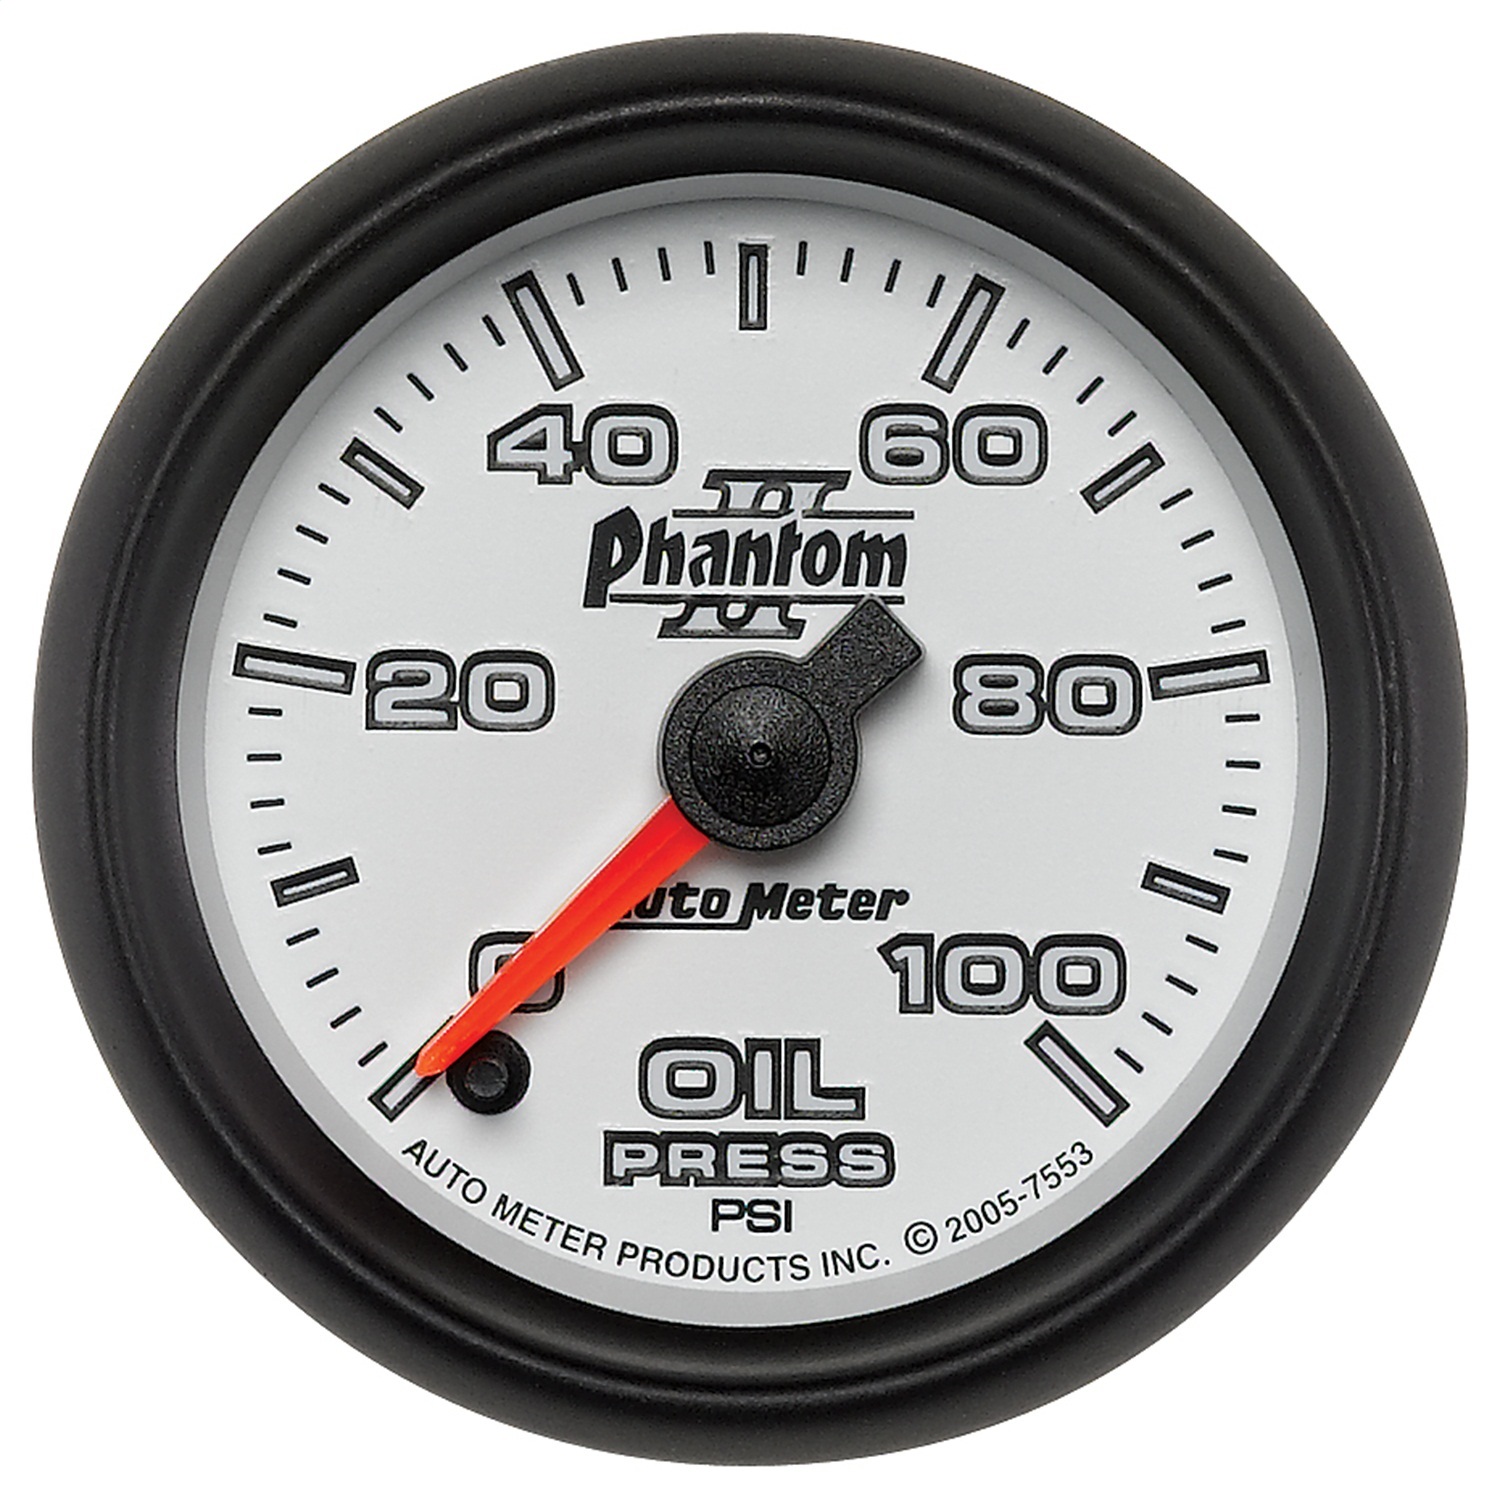 AutoMeter 7553 Phantom II Electric Oil Pressure Gauge